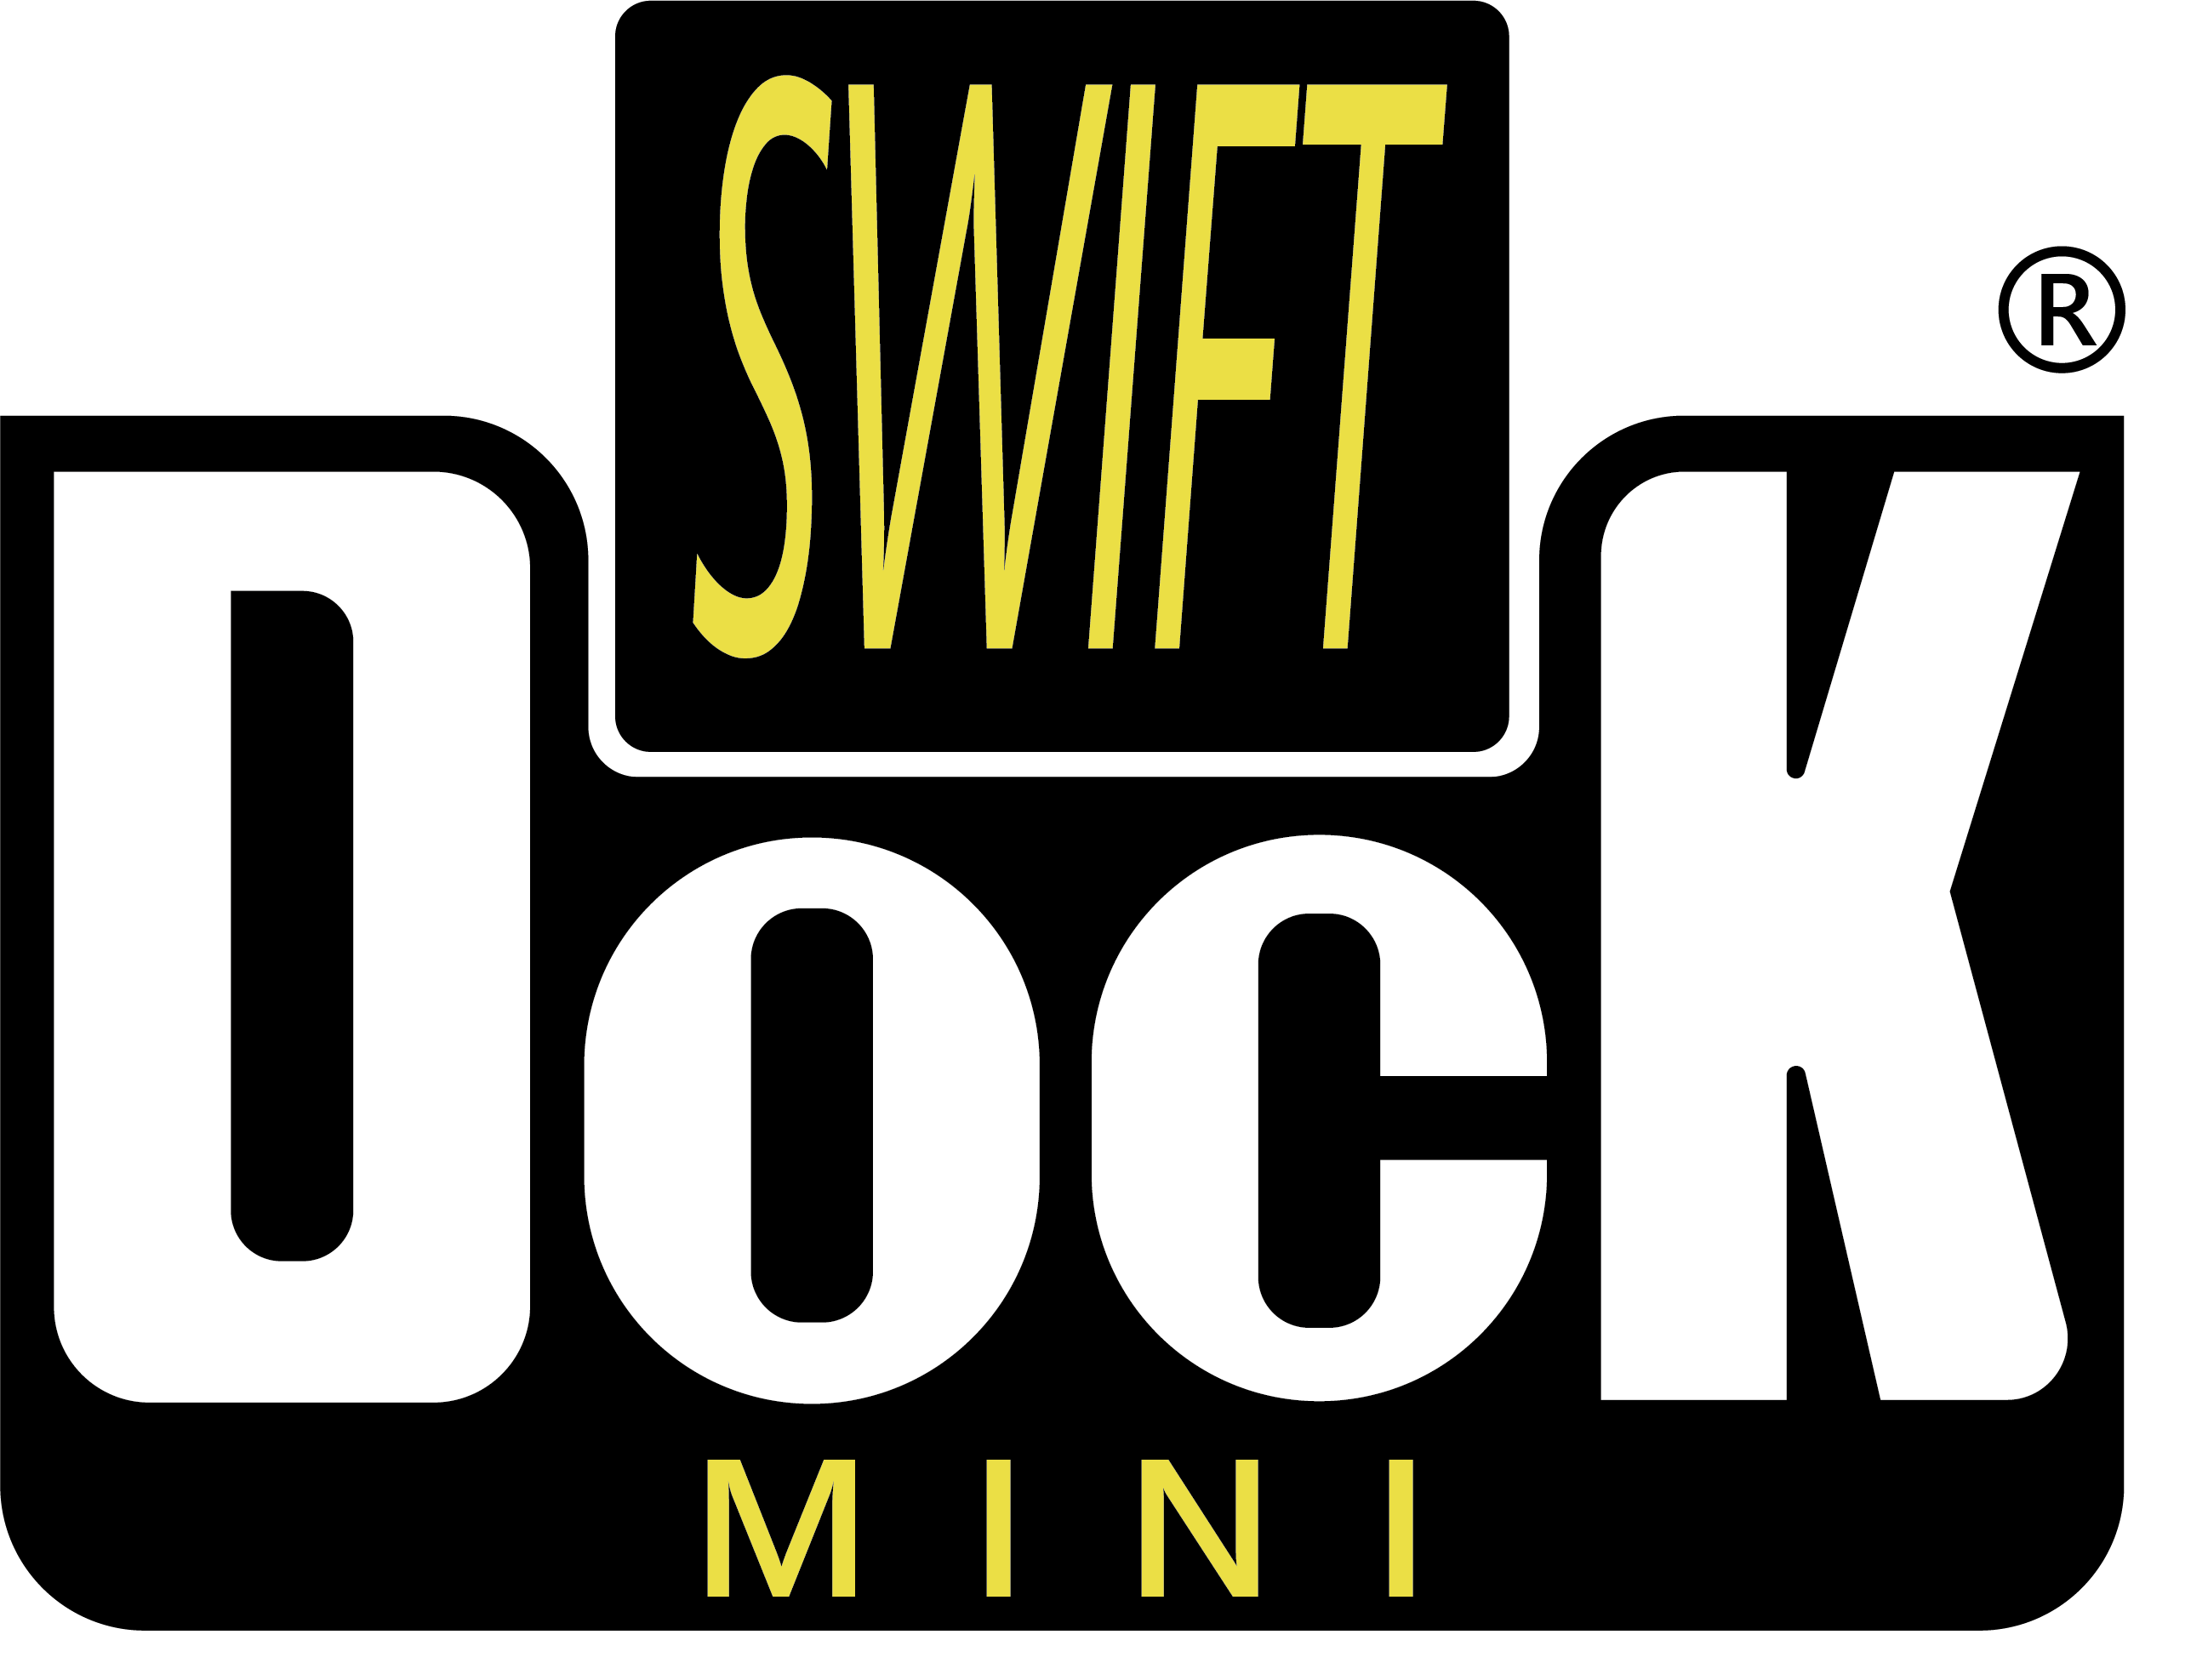 Swift Dock Mini